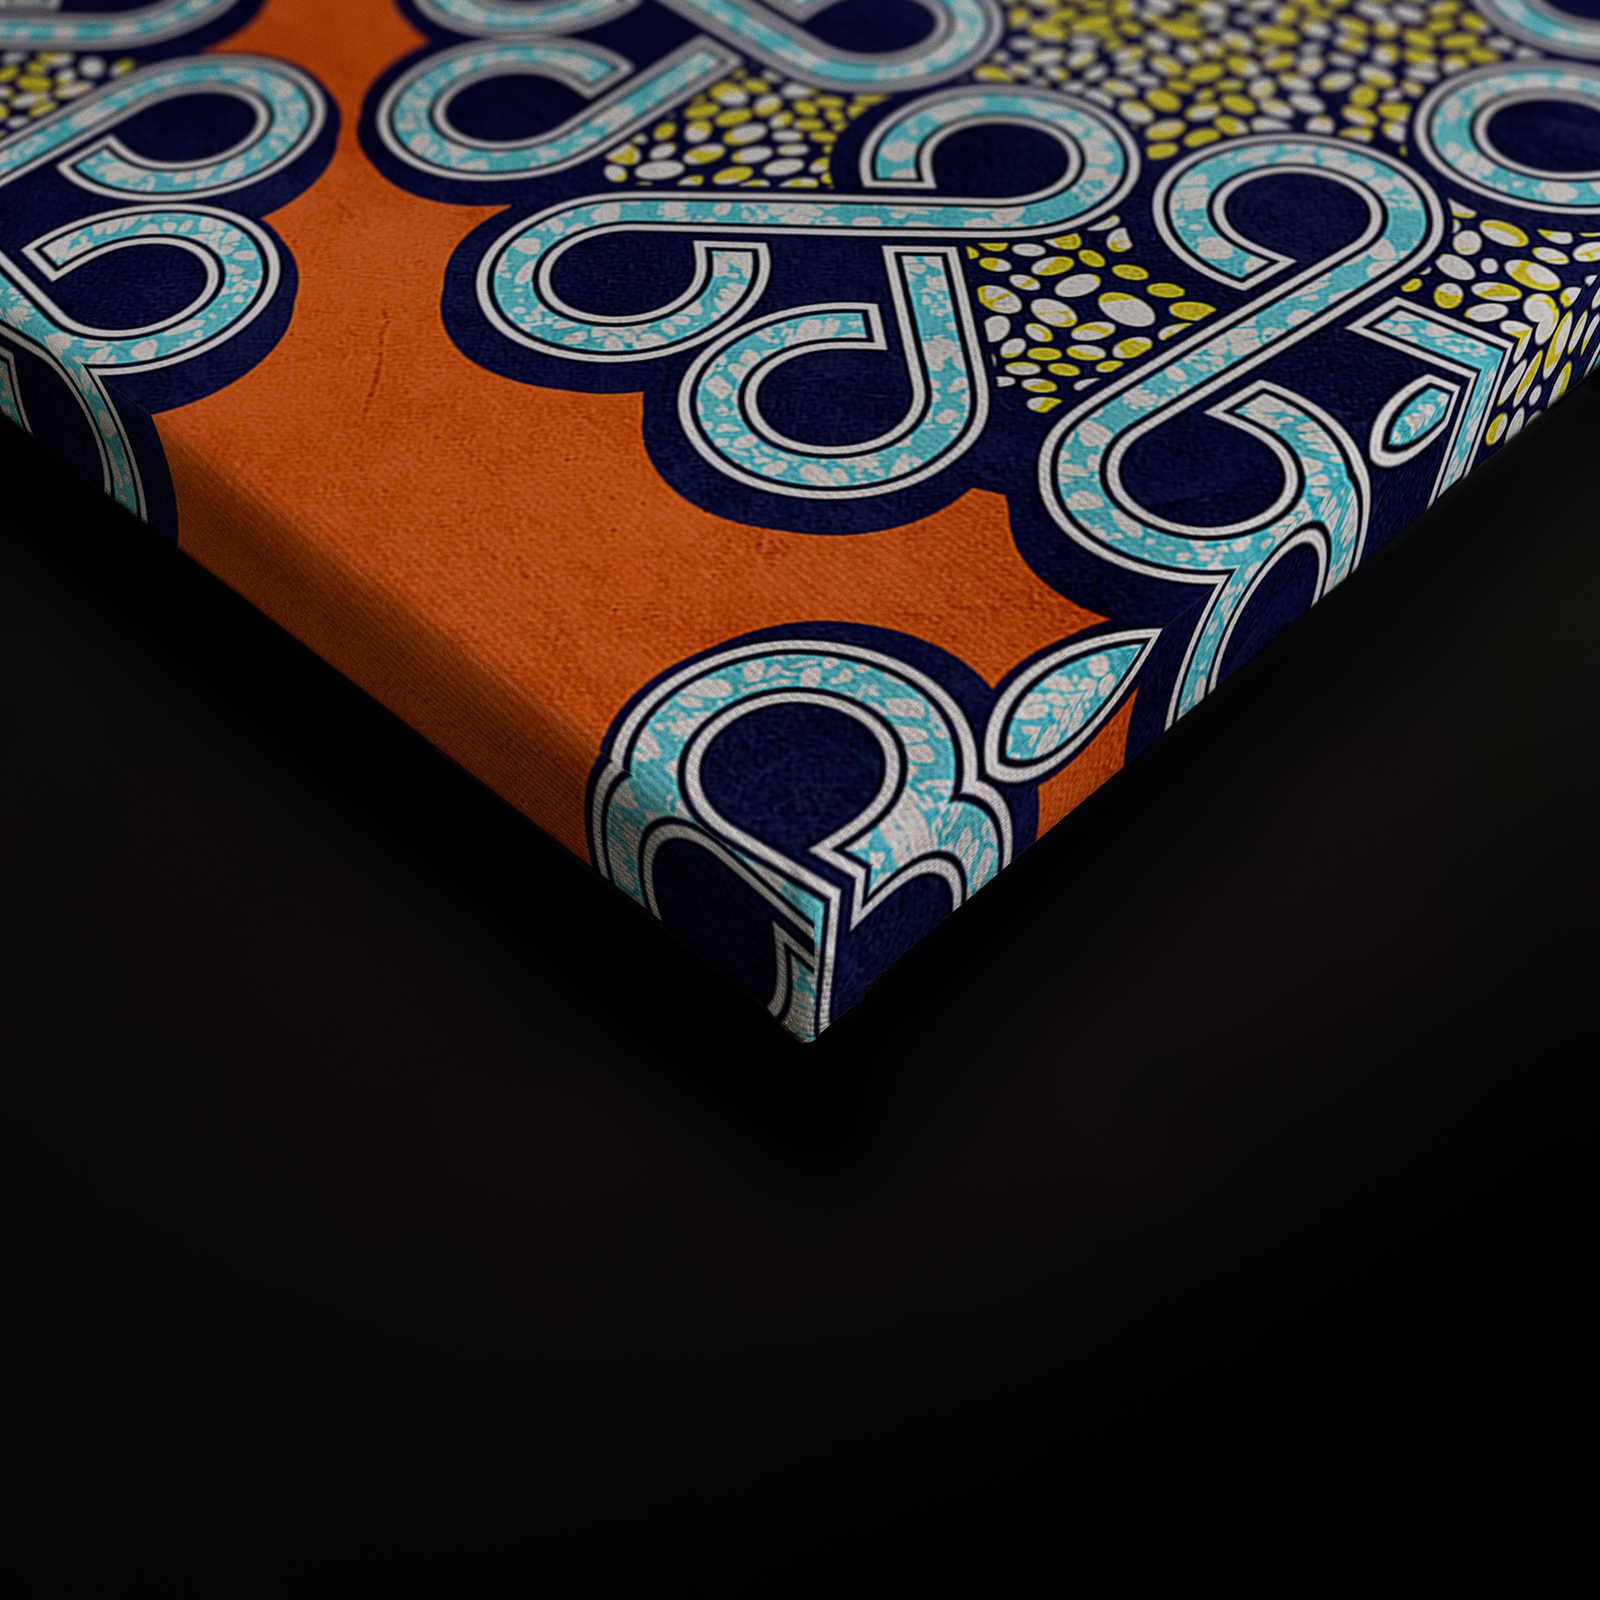             Dakar 2 - Toile africaine tissu de cire motif orange, bleu - 1,20 m x 0,80 m
        